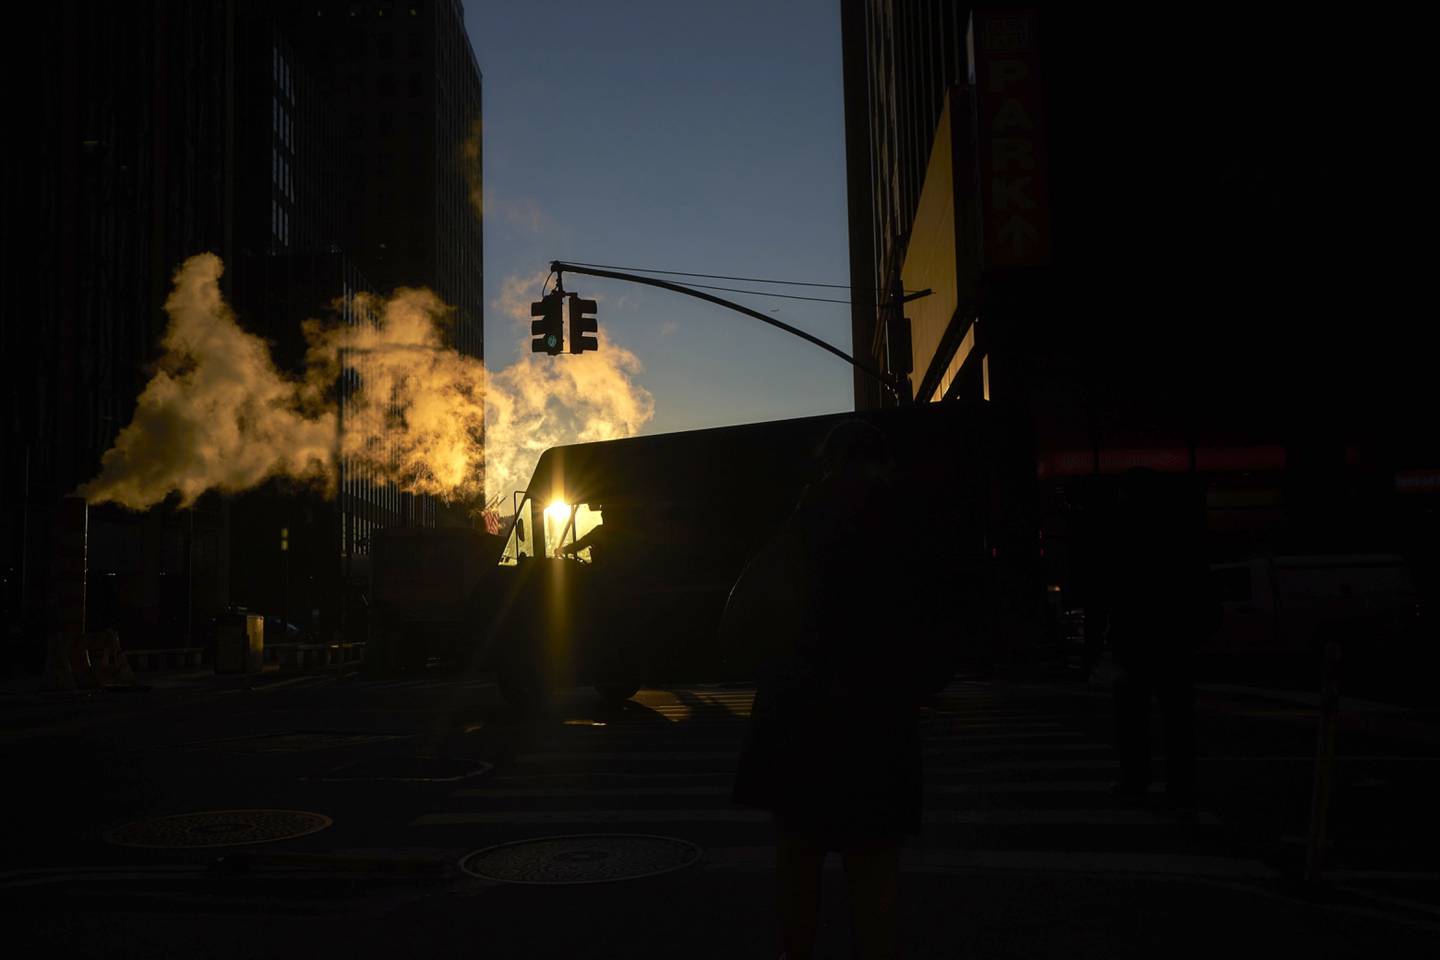 El vapor se eleva por encima de una furgoneta de reparto en Wall Street, cerca de la Bolsa de Nueva York (NYSE), en Nueva York, Estados Unidos, el jueves 27 de diciembre de 2018. Fotógrafo: John Taggart/Bloomberg